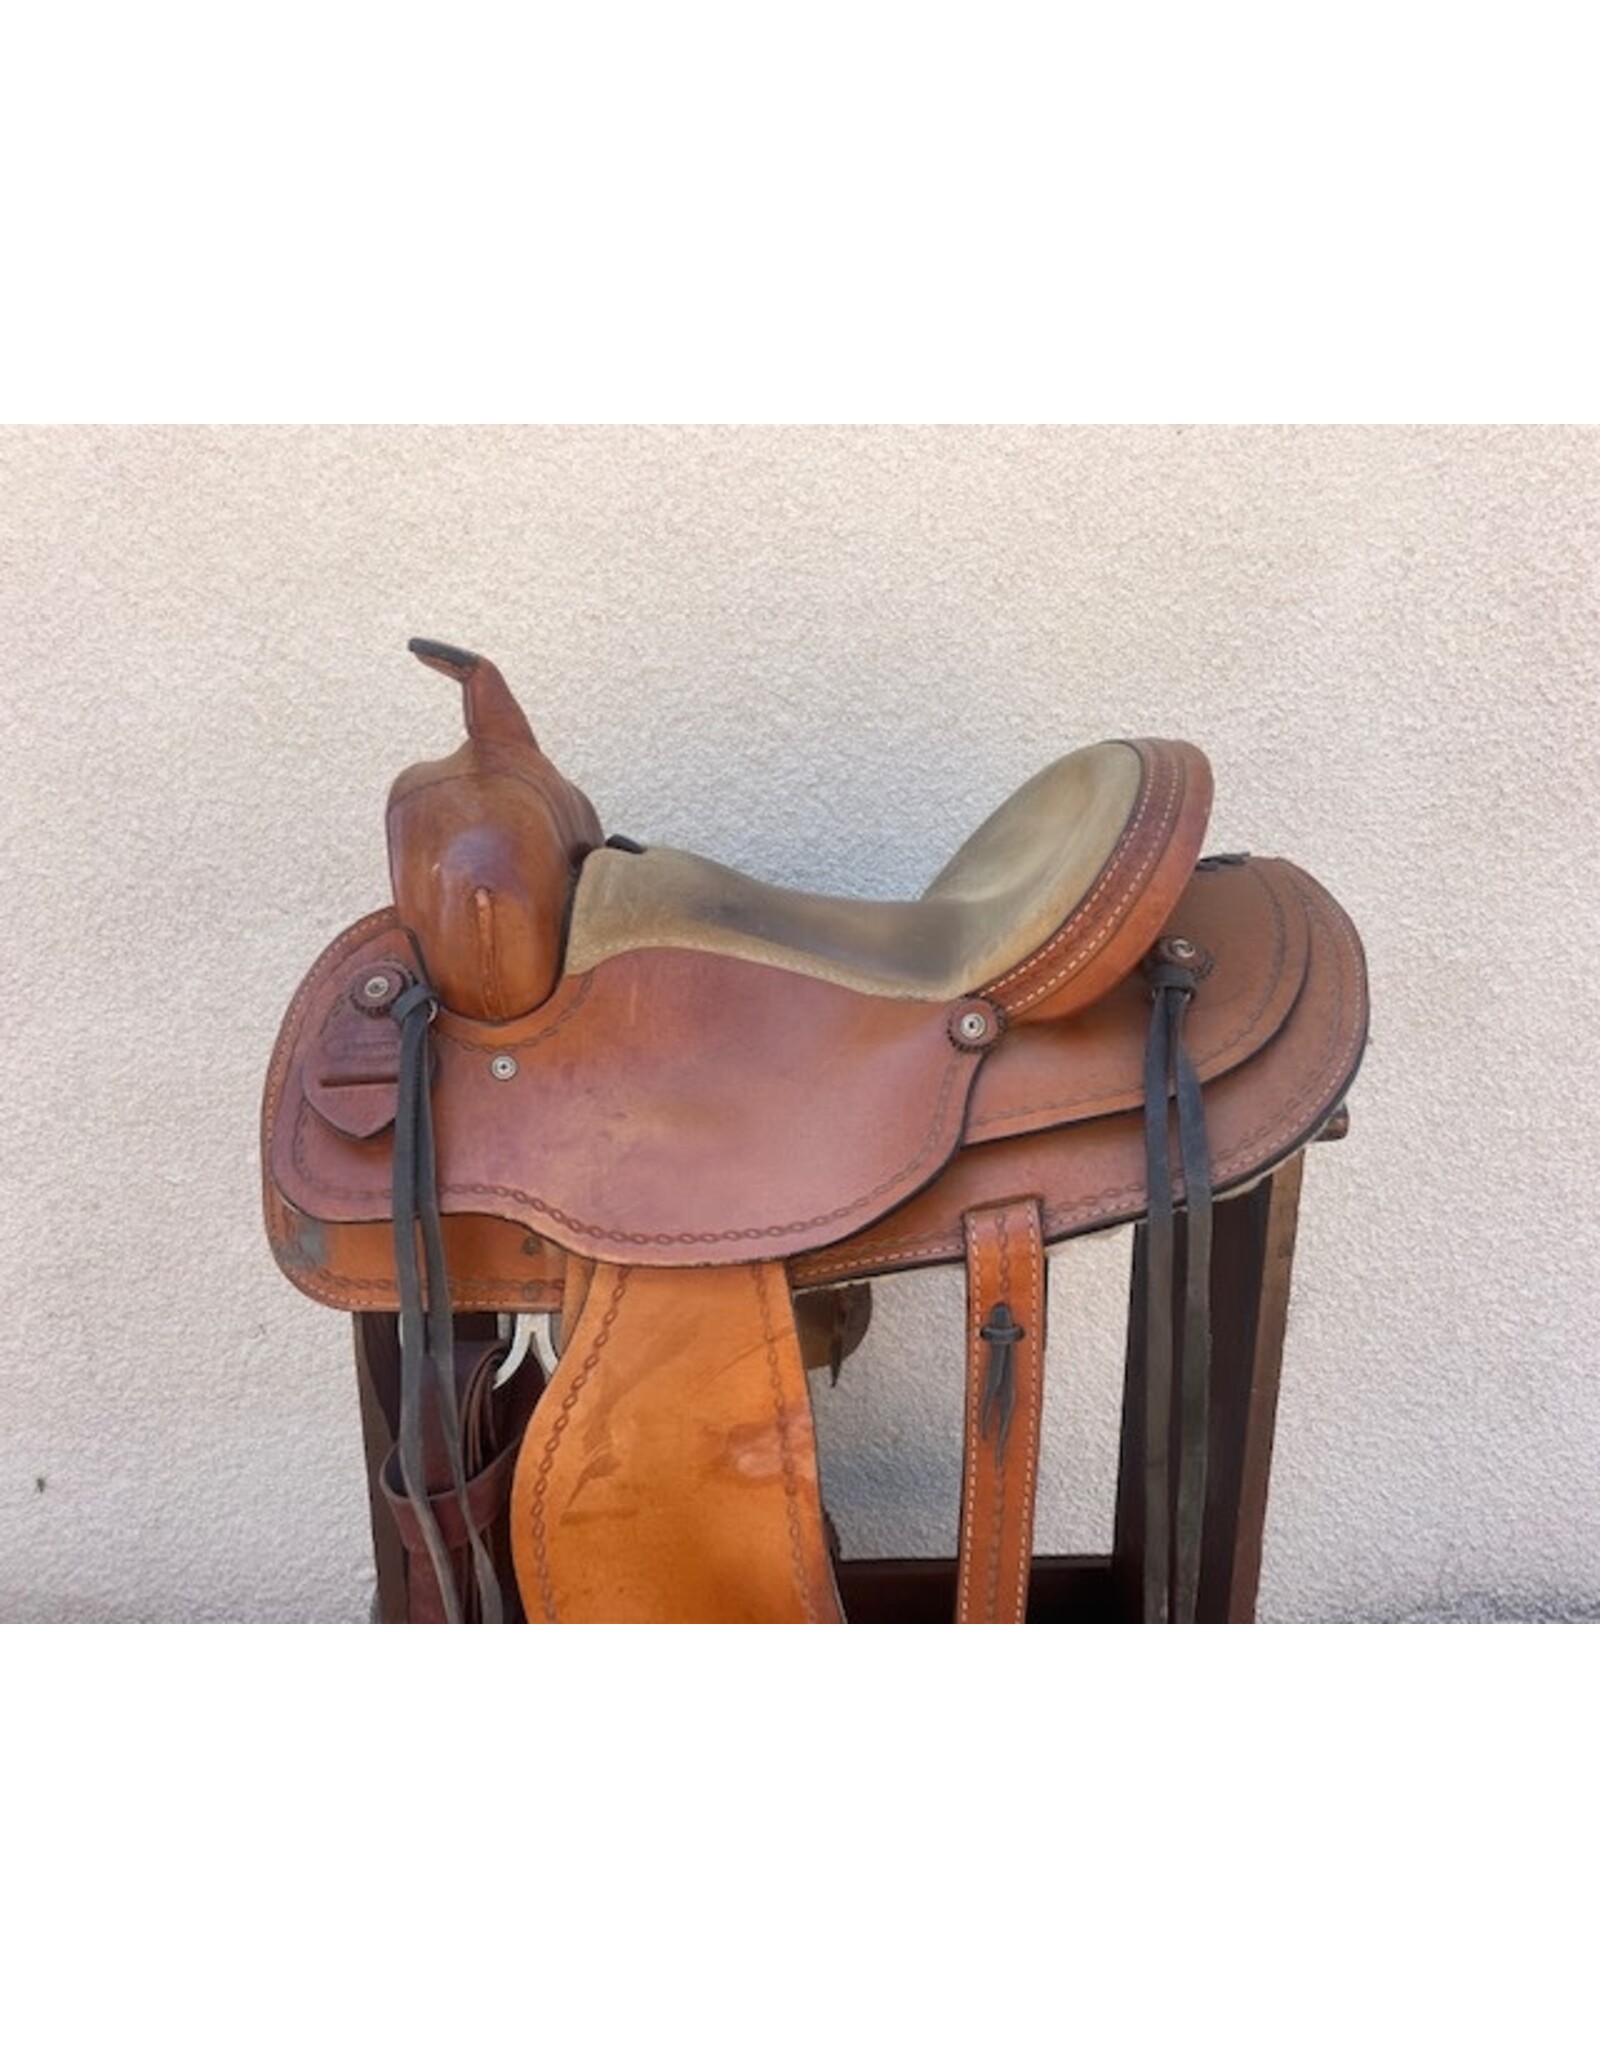 Dakota Western saddle, 15", Full quarter Bars